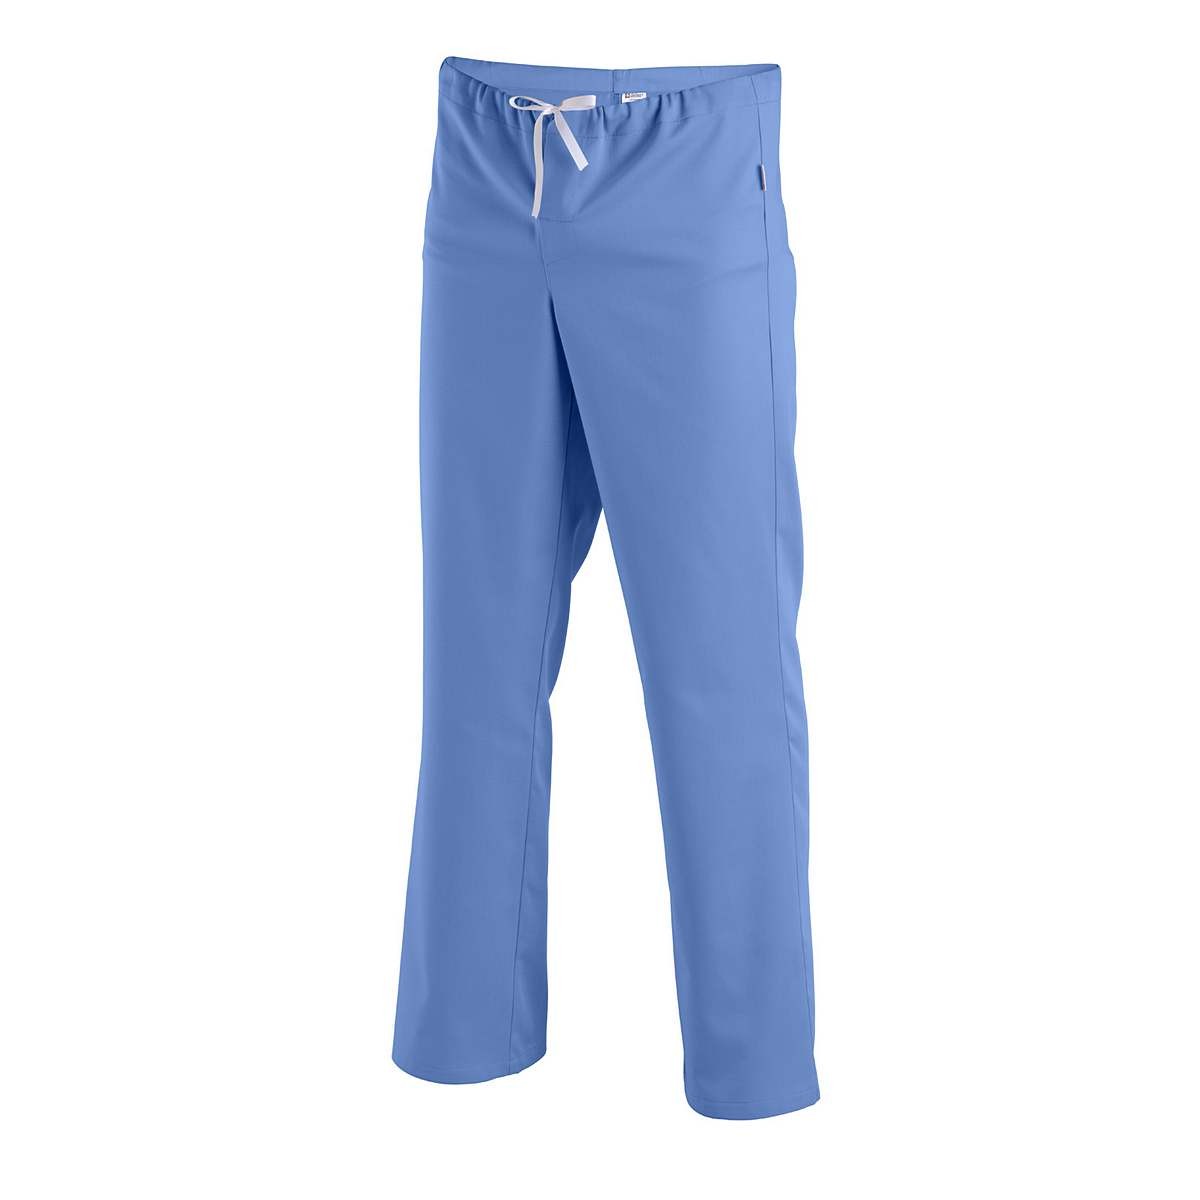 Surgical trousers MEROPE - Surgical trousers MEROPE